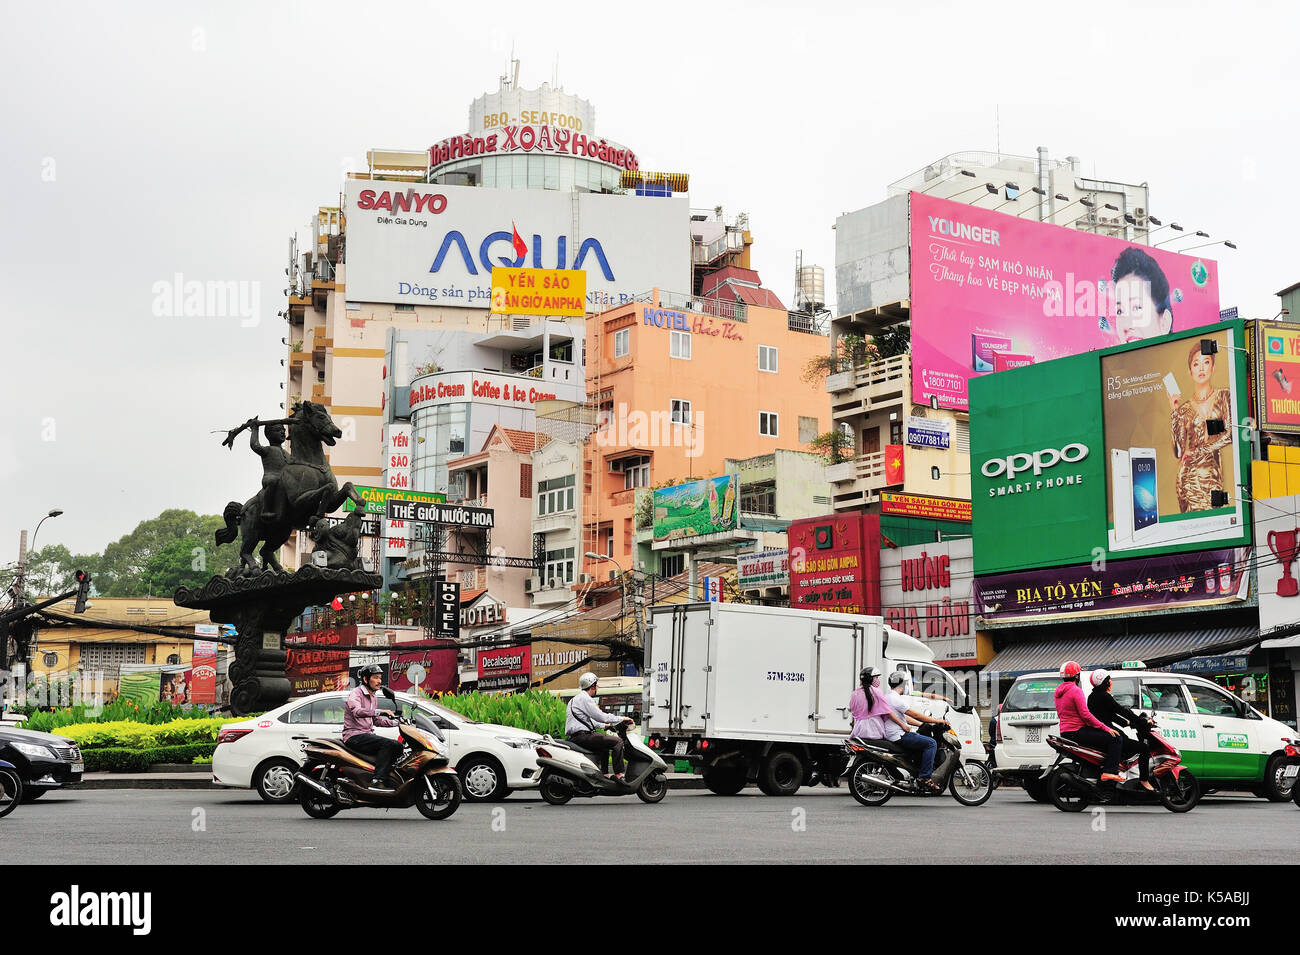 Saigon, Vietnam - Feb 25,2015: Straßenverkehr in Saigon (Ho Chi Minh), Vietnam. Ho Chi Minh City ist die grösste Stadt im Süden von Vietnam. Stockfoto